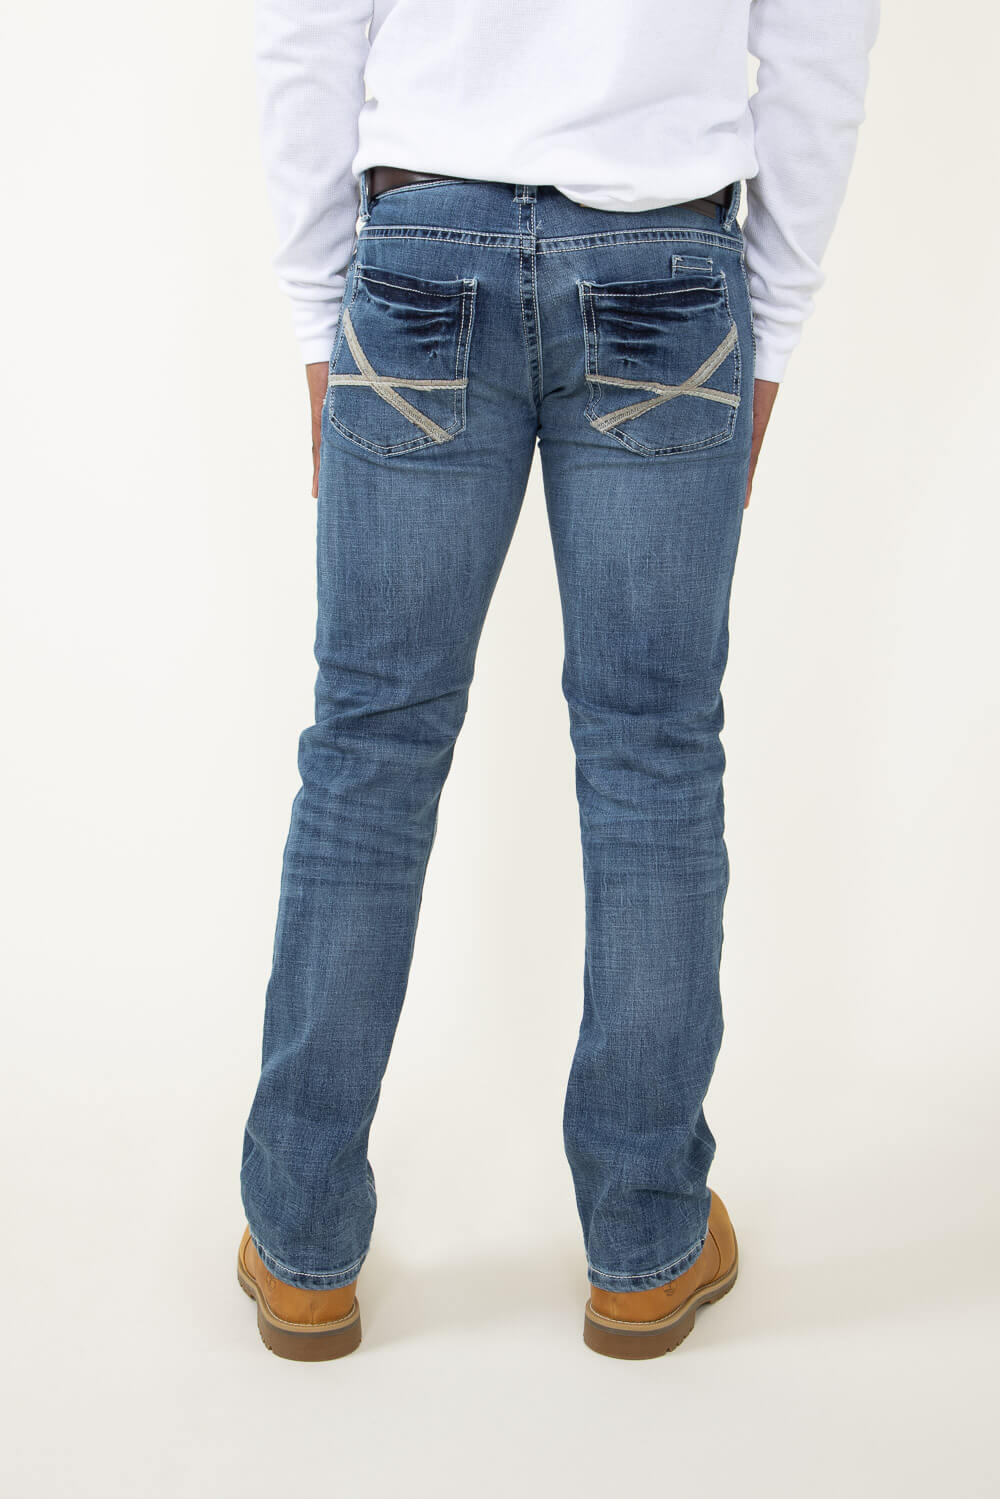 Lucky Brand Zipper Fly Classic, Straight Leg Jeans for Men